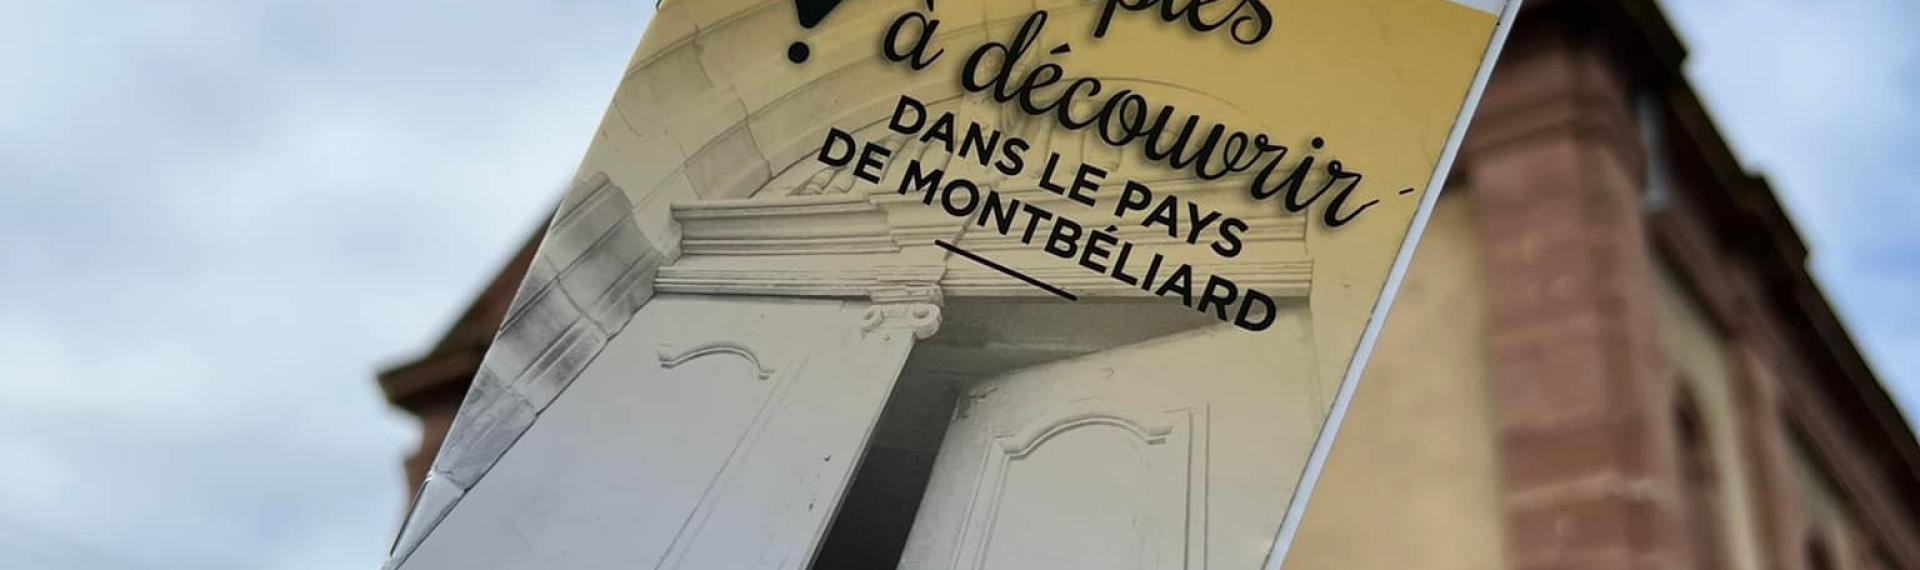 ©Pays de Montbéliard Tourisme